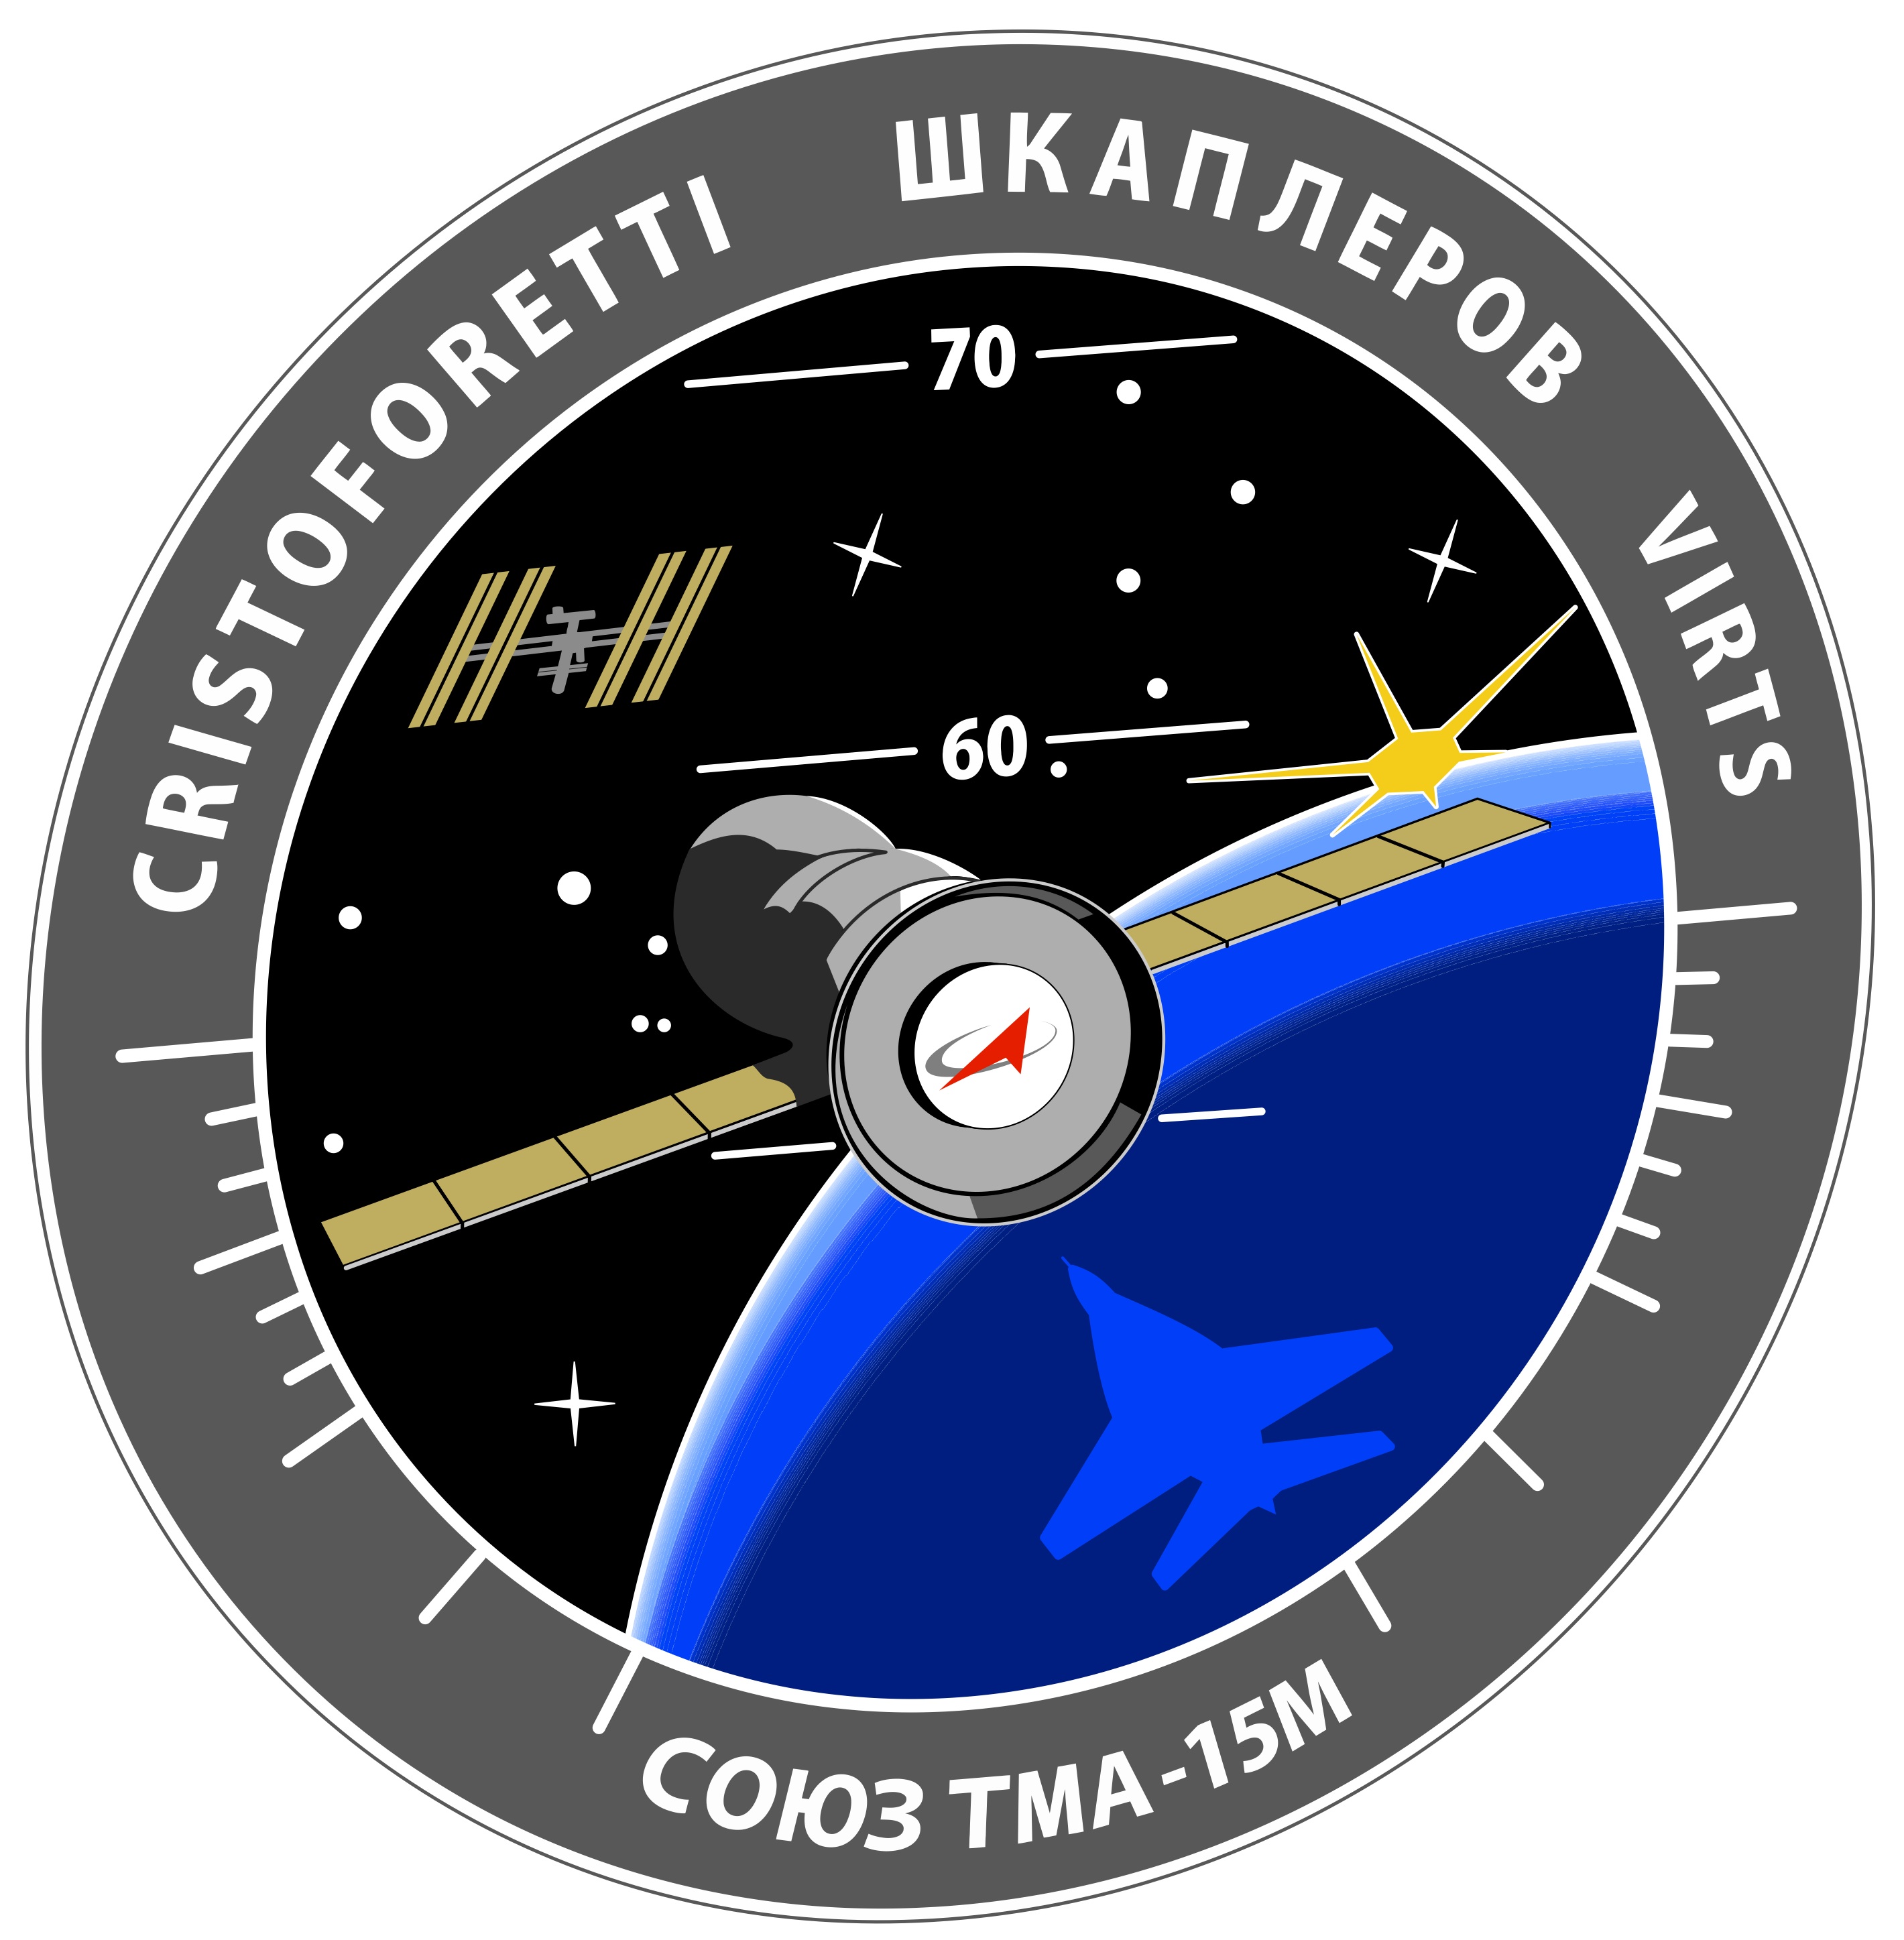 La patch di missione della Sojuz TMA-15M. Credit: Roscosmos/Spacepatches.nl